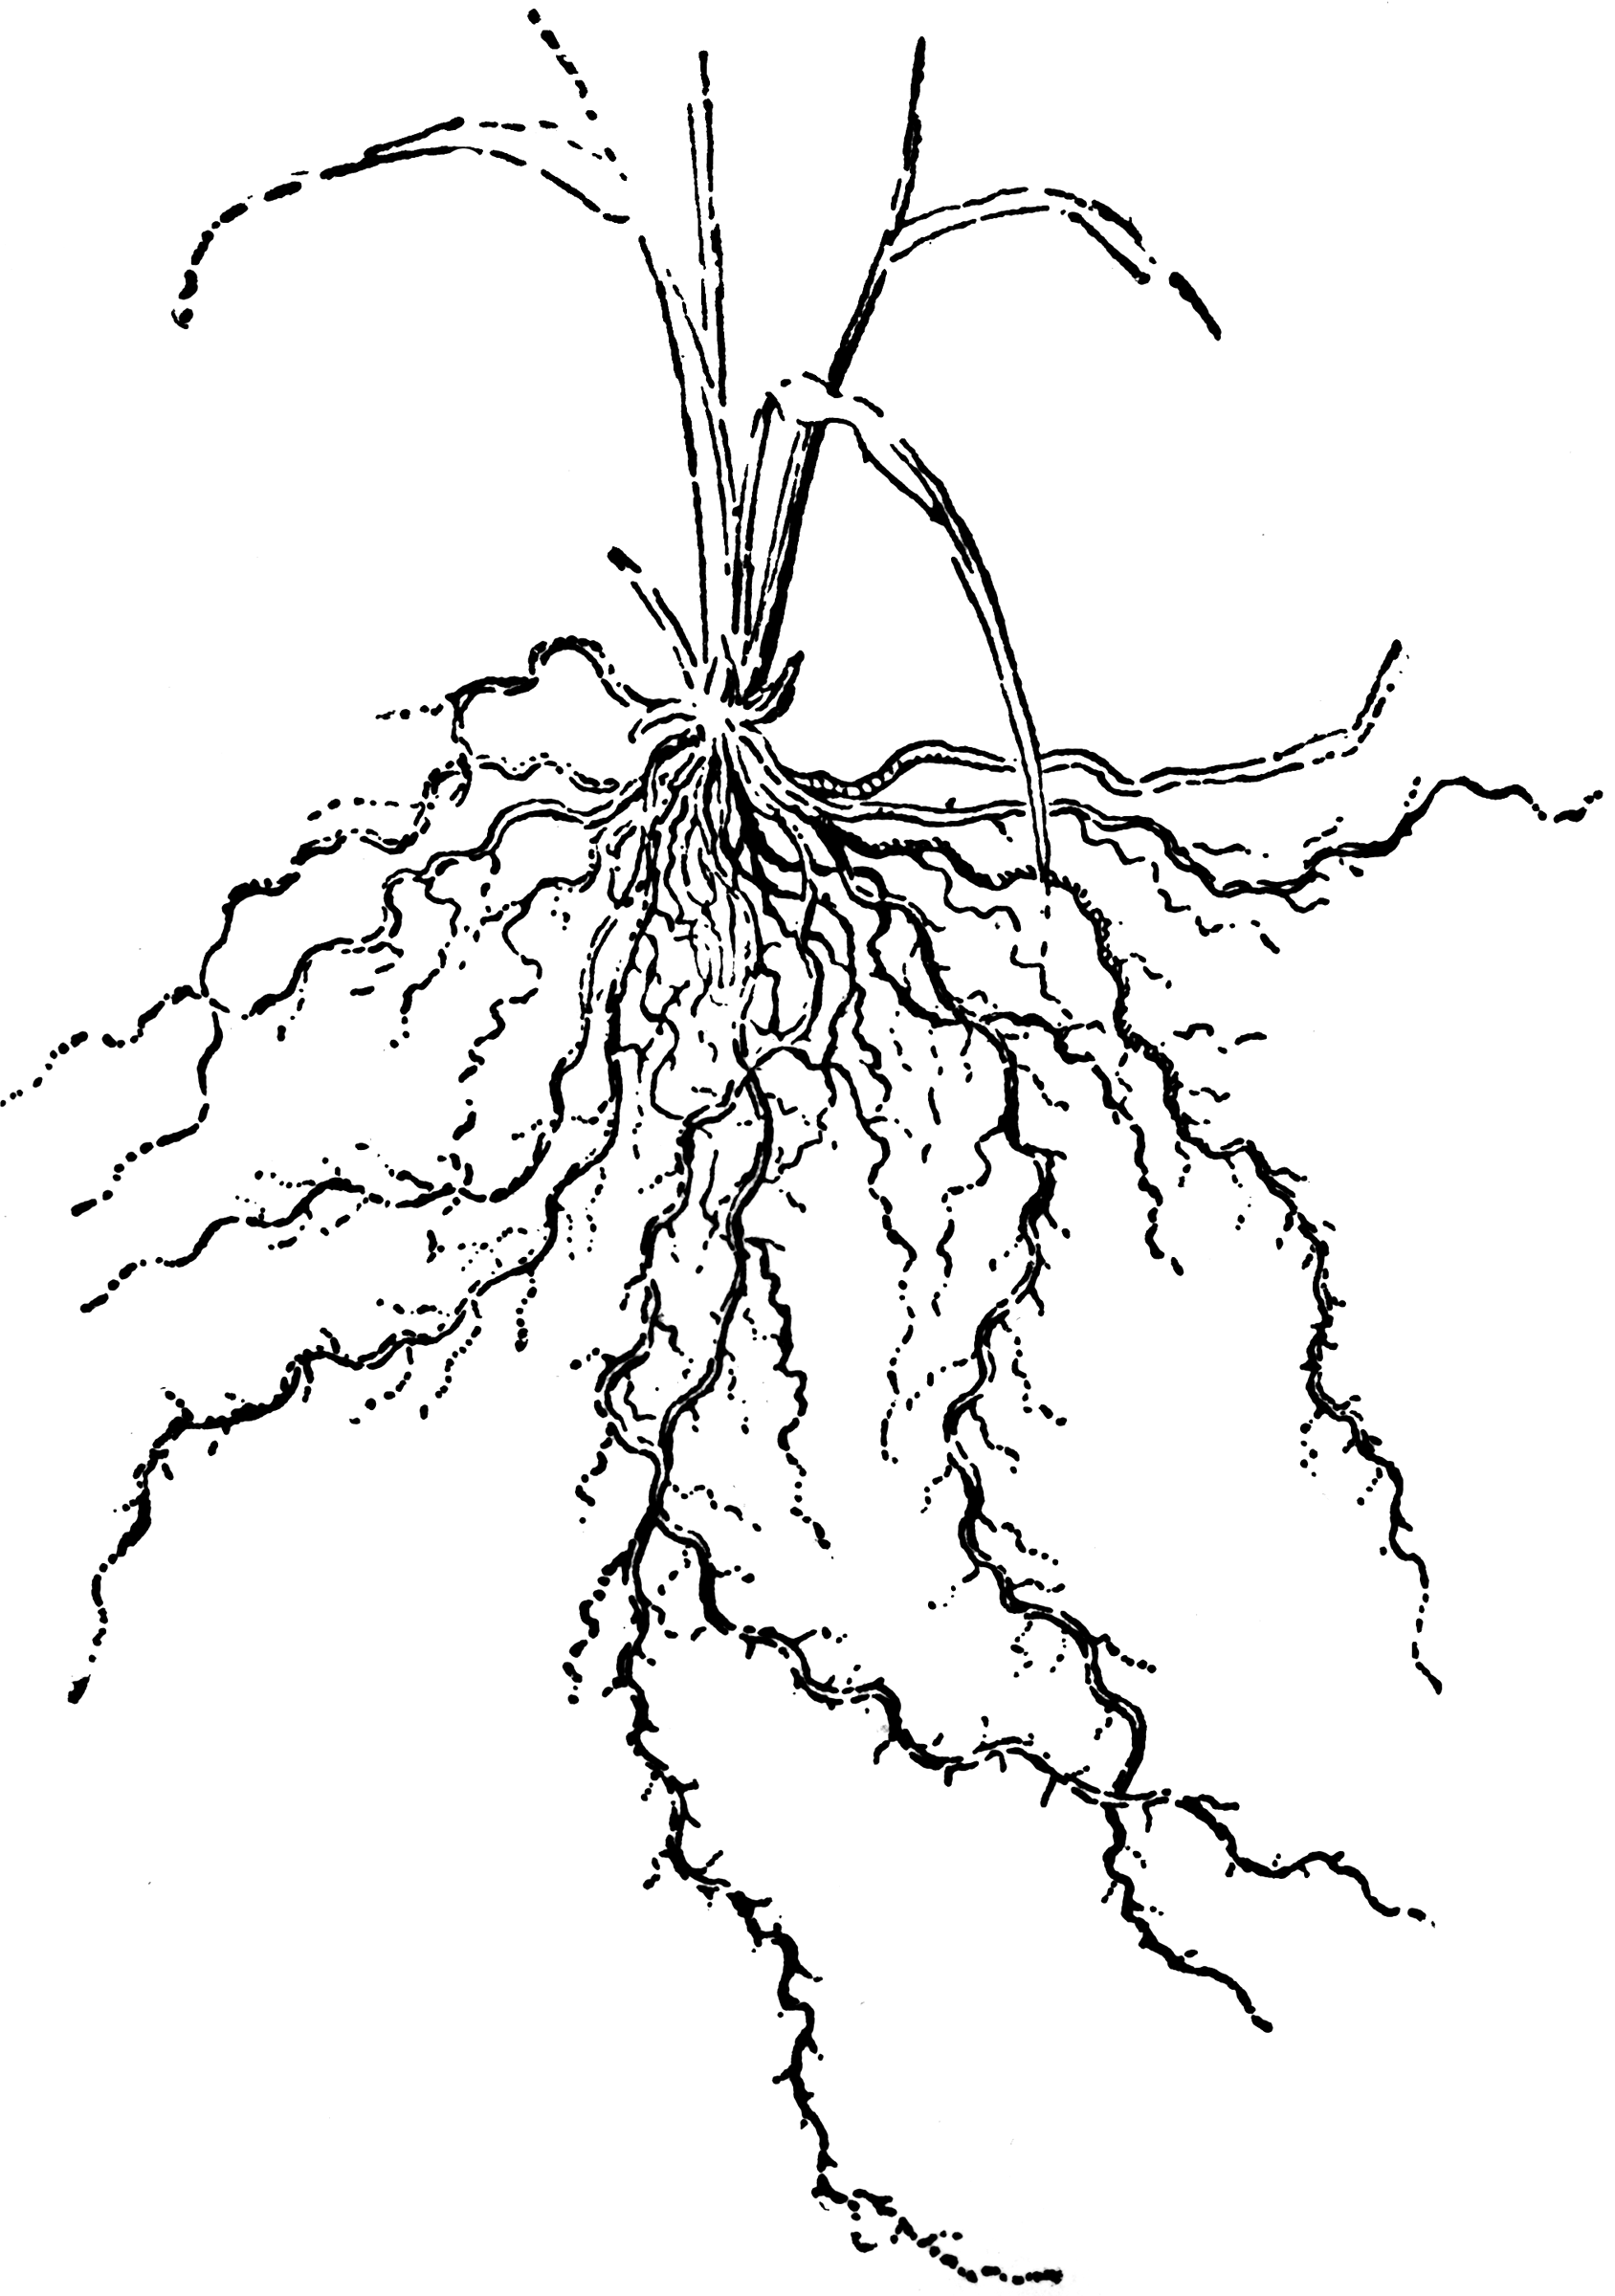 Fibrous Roots | ClipArt ETC